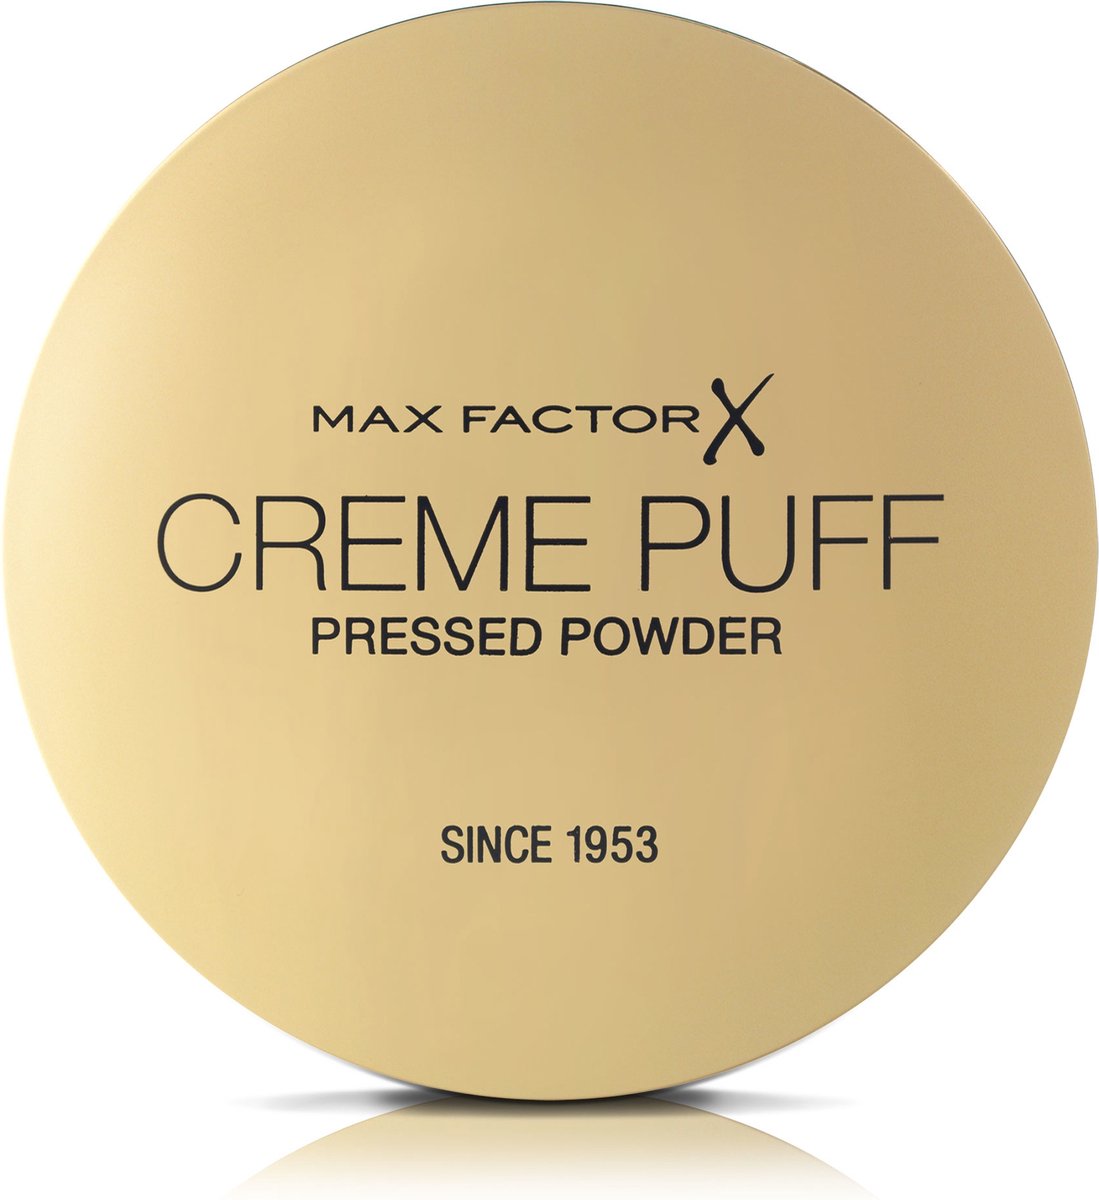 Max Factor Crème Puff Gezichtspoeder - 05 Translucent - Max Factor